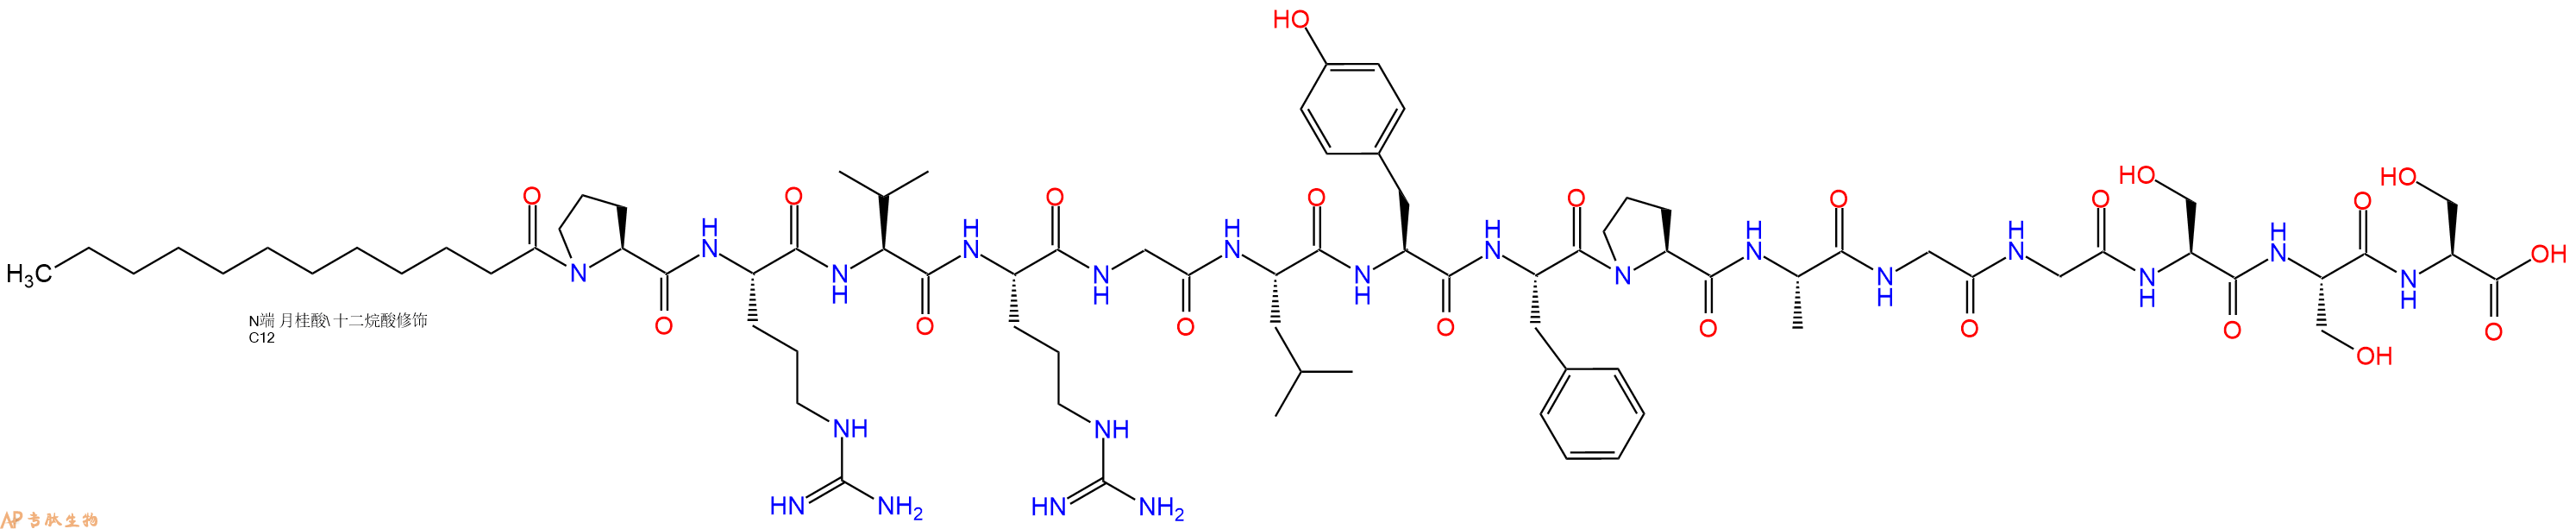 专肽生物产品Lauricacid-Pro-Arg-Val-Arg-Gly-Leu-Tyr-Phe-Pro-Ala